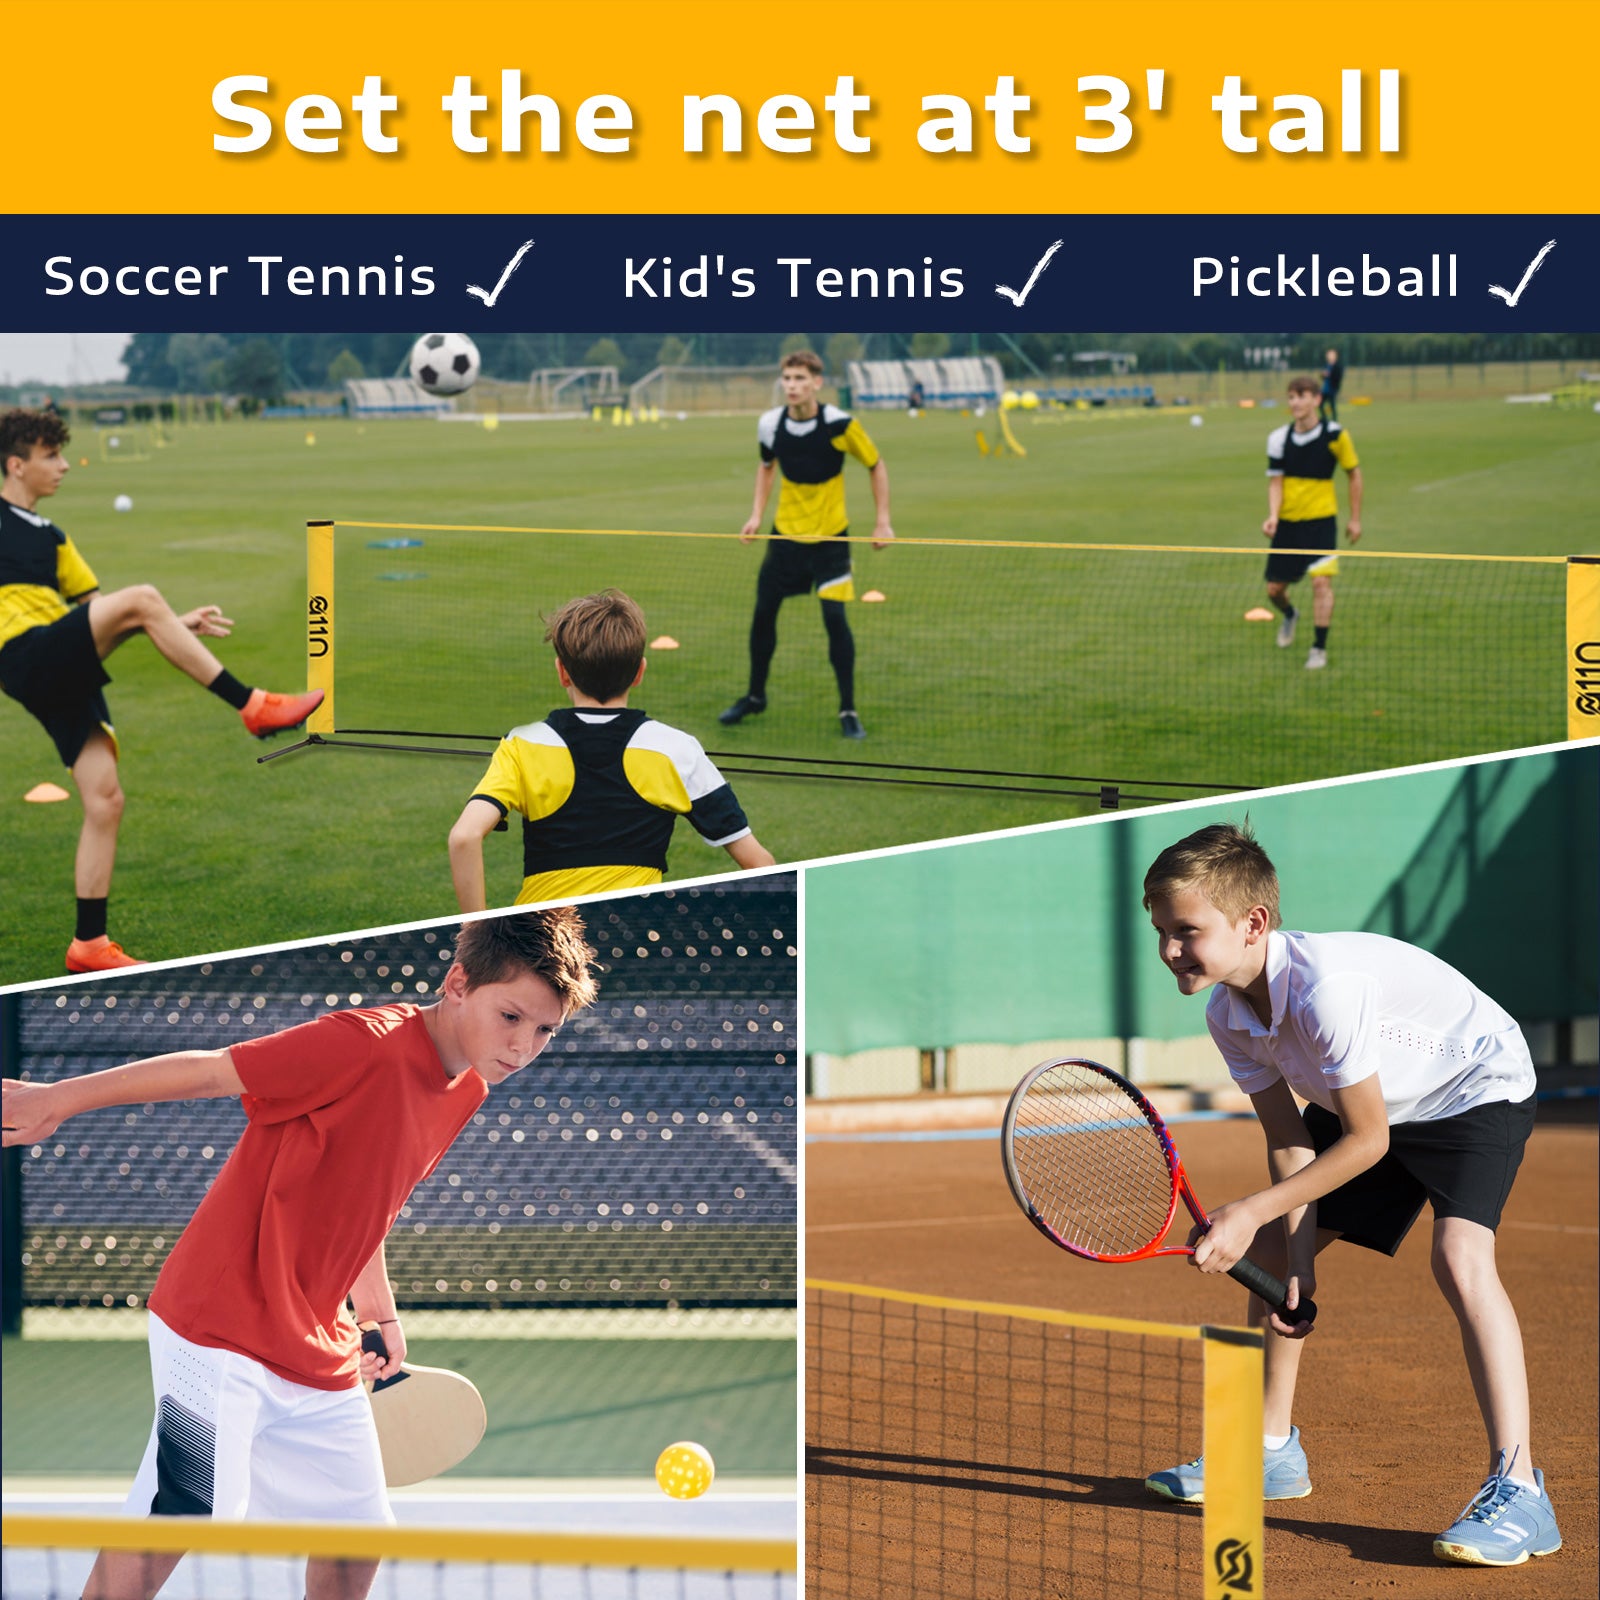 Portable Pliant Simple 4m 5m 6m Tennis Net Badminton Net